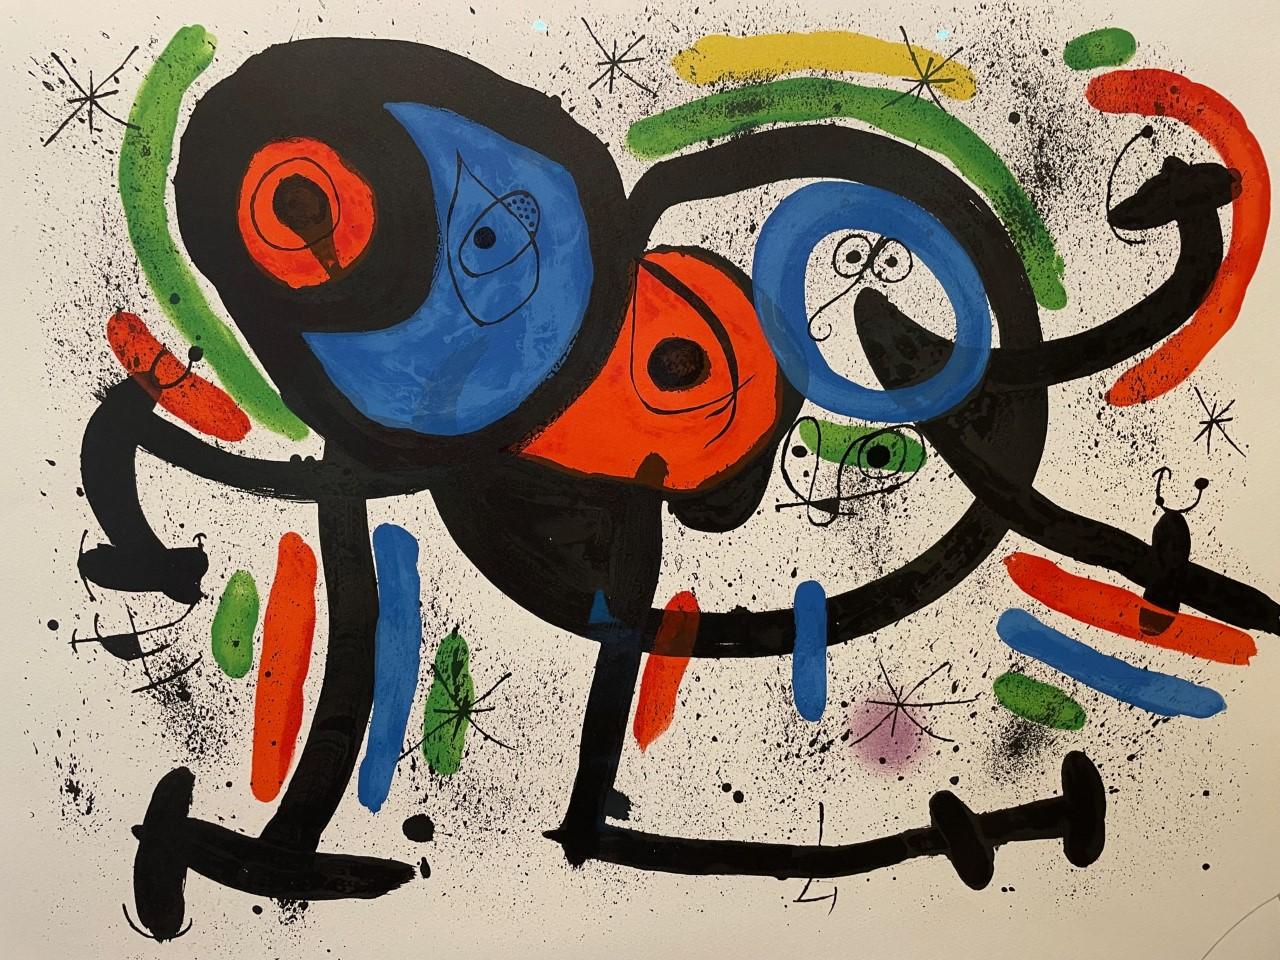 Colour Lithograph 'La Triple Roue ll' 1981 - Print by Joan Miró